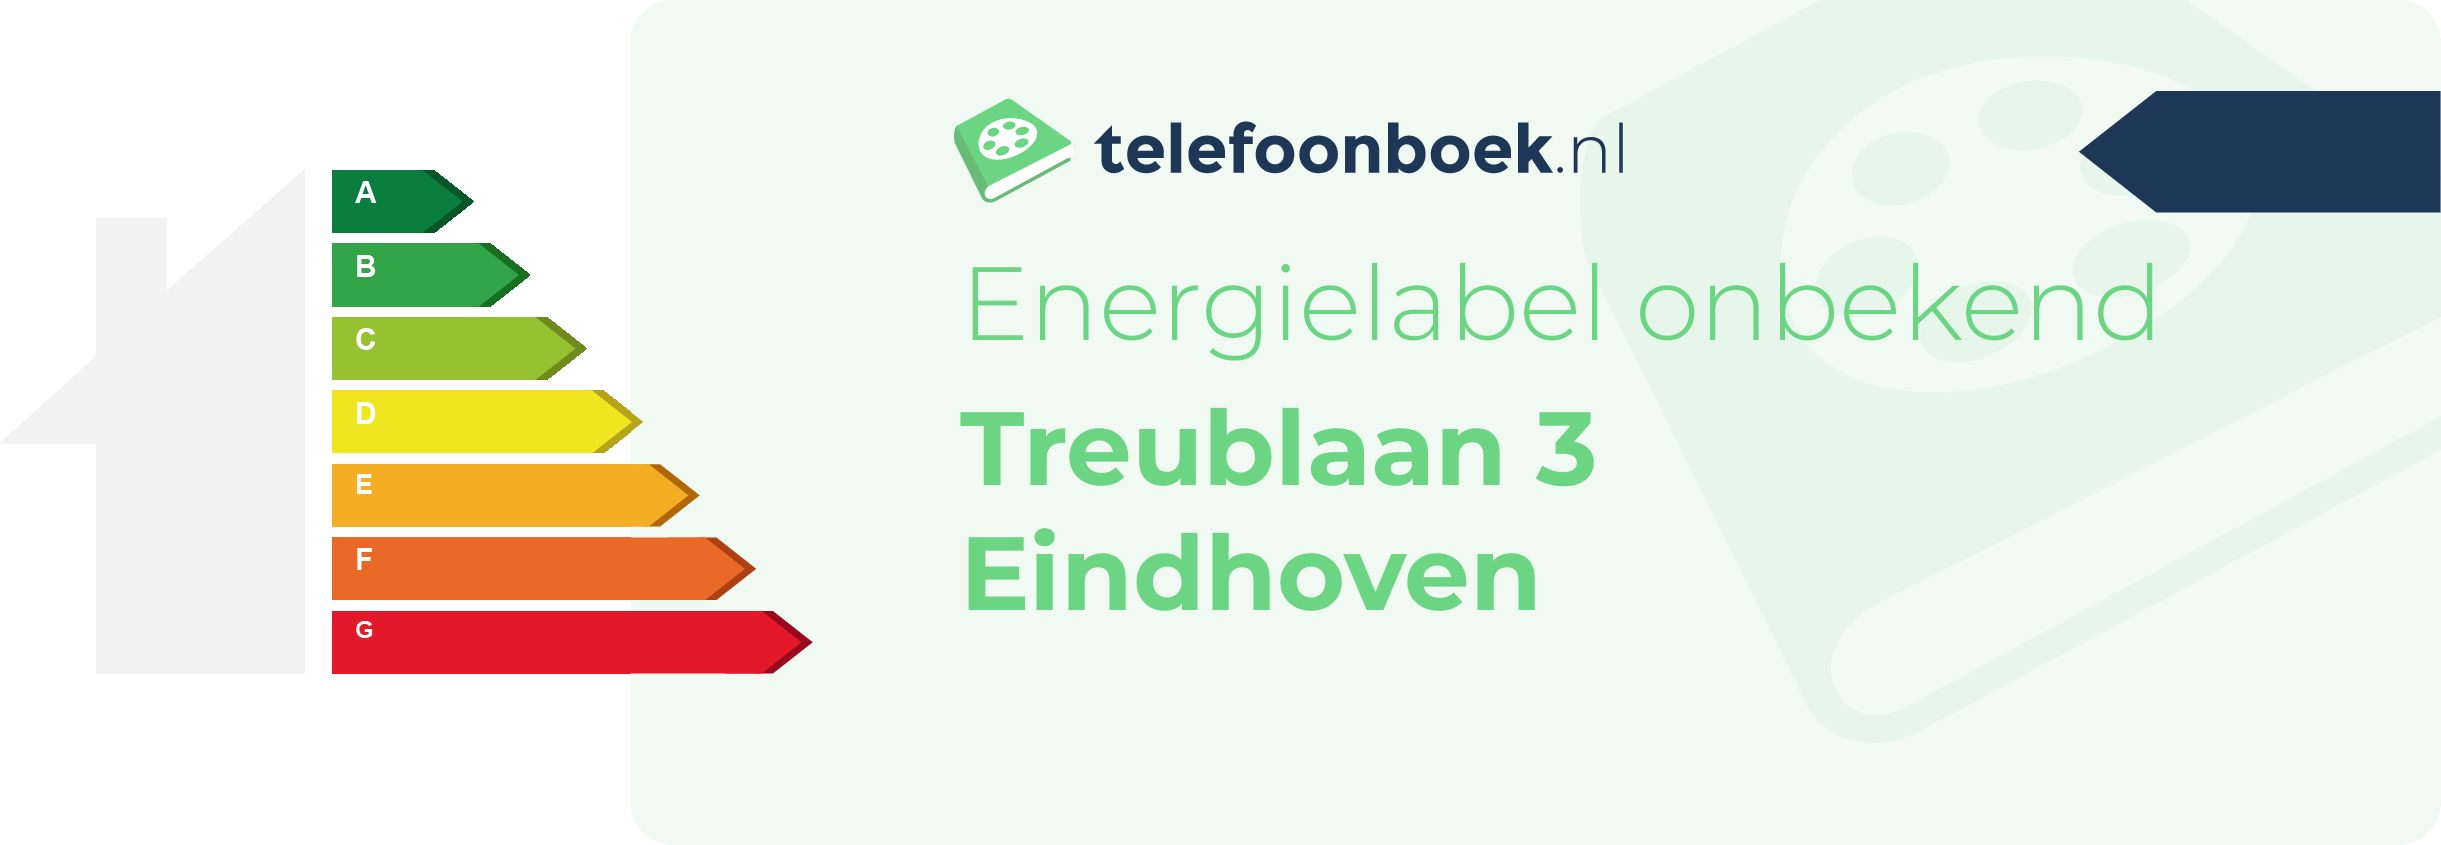 Energielabel Treublaan 3 Eindhoven